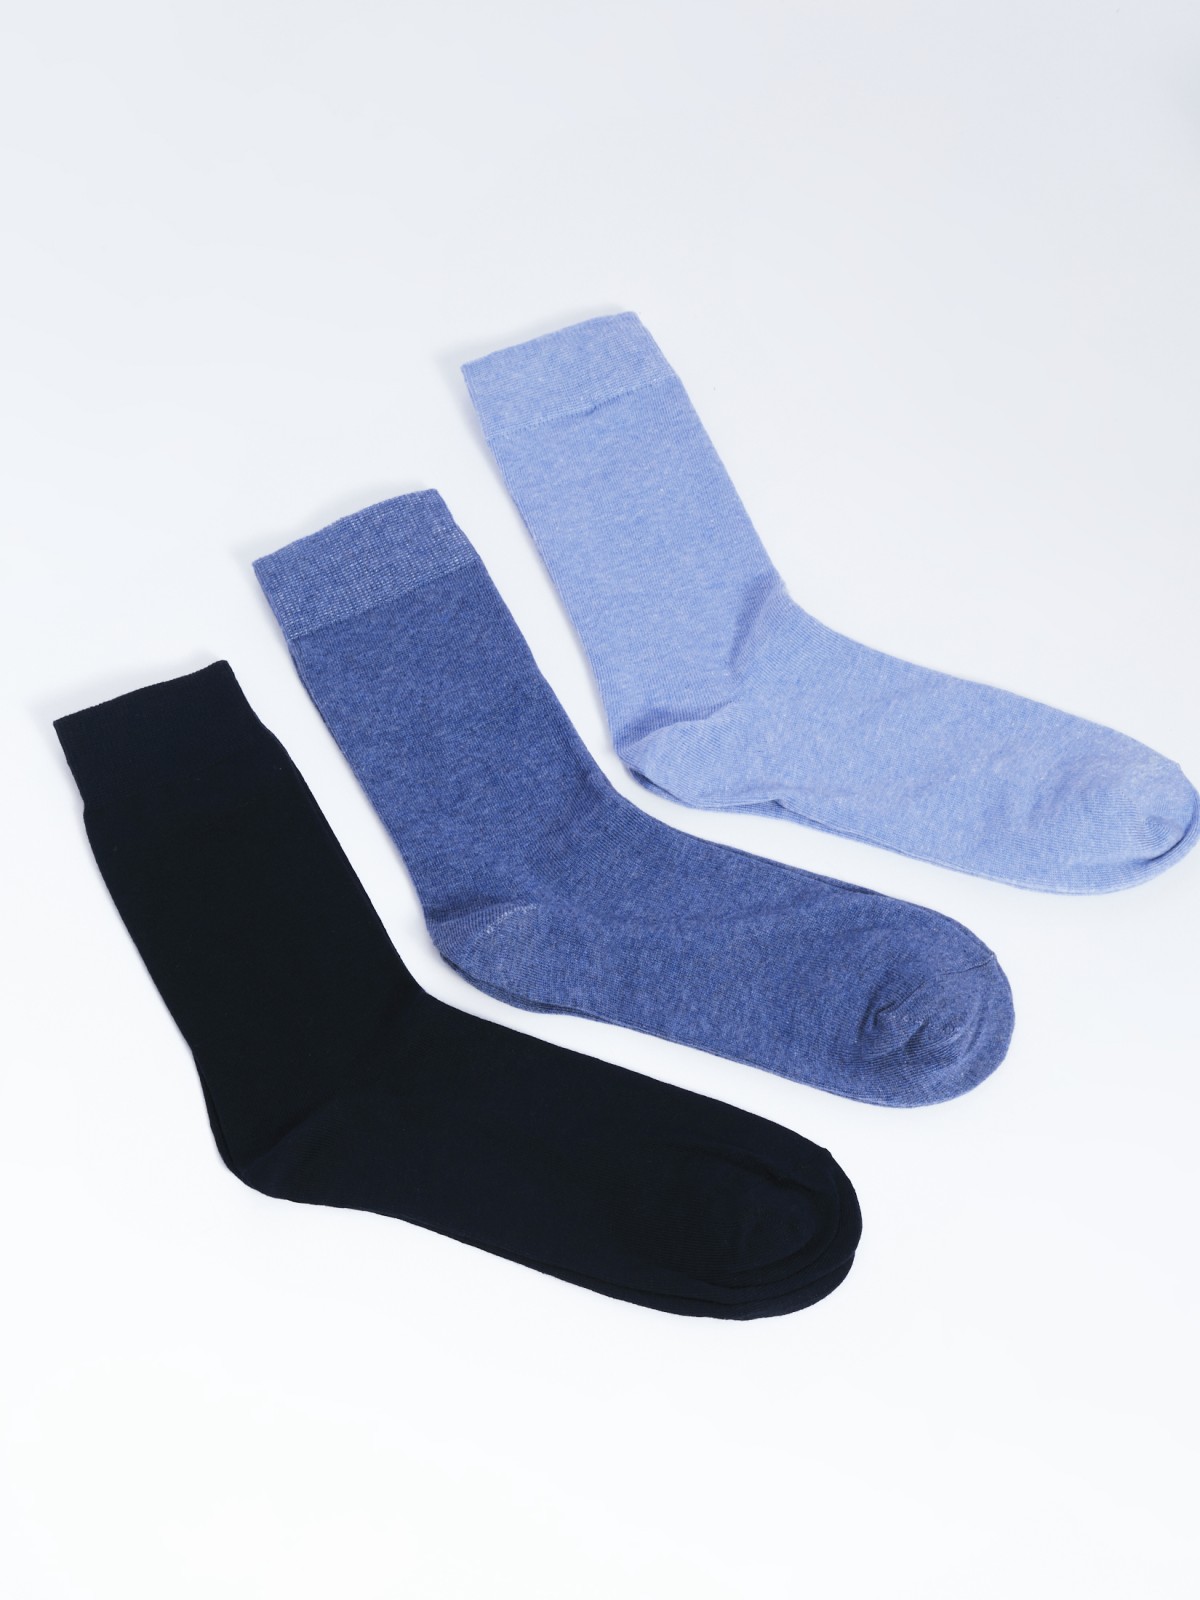 Набор носков (3 пары в комплекте) zolla 01331990Z025, цвет темно-синий, размер 25-27